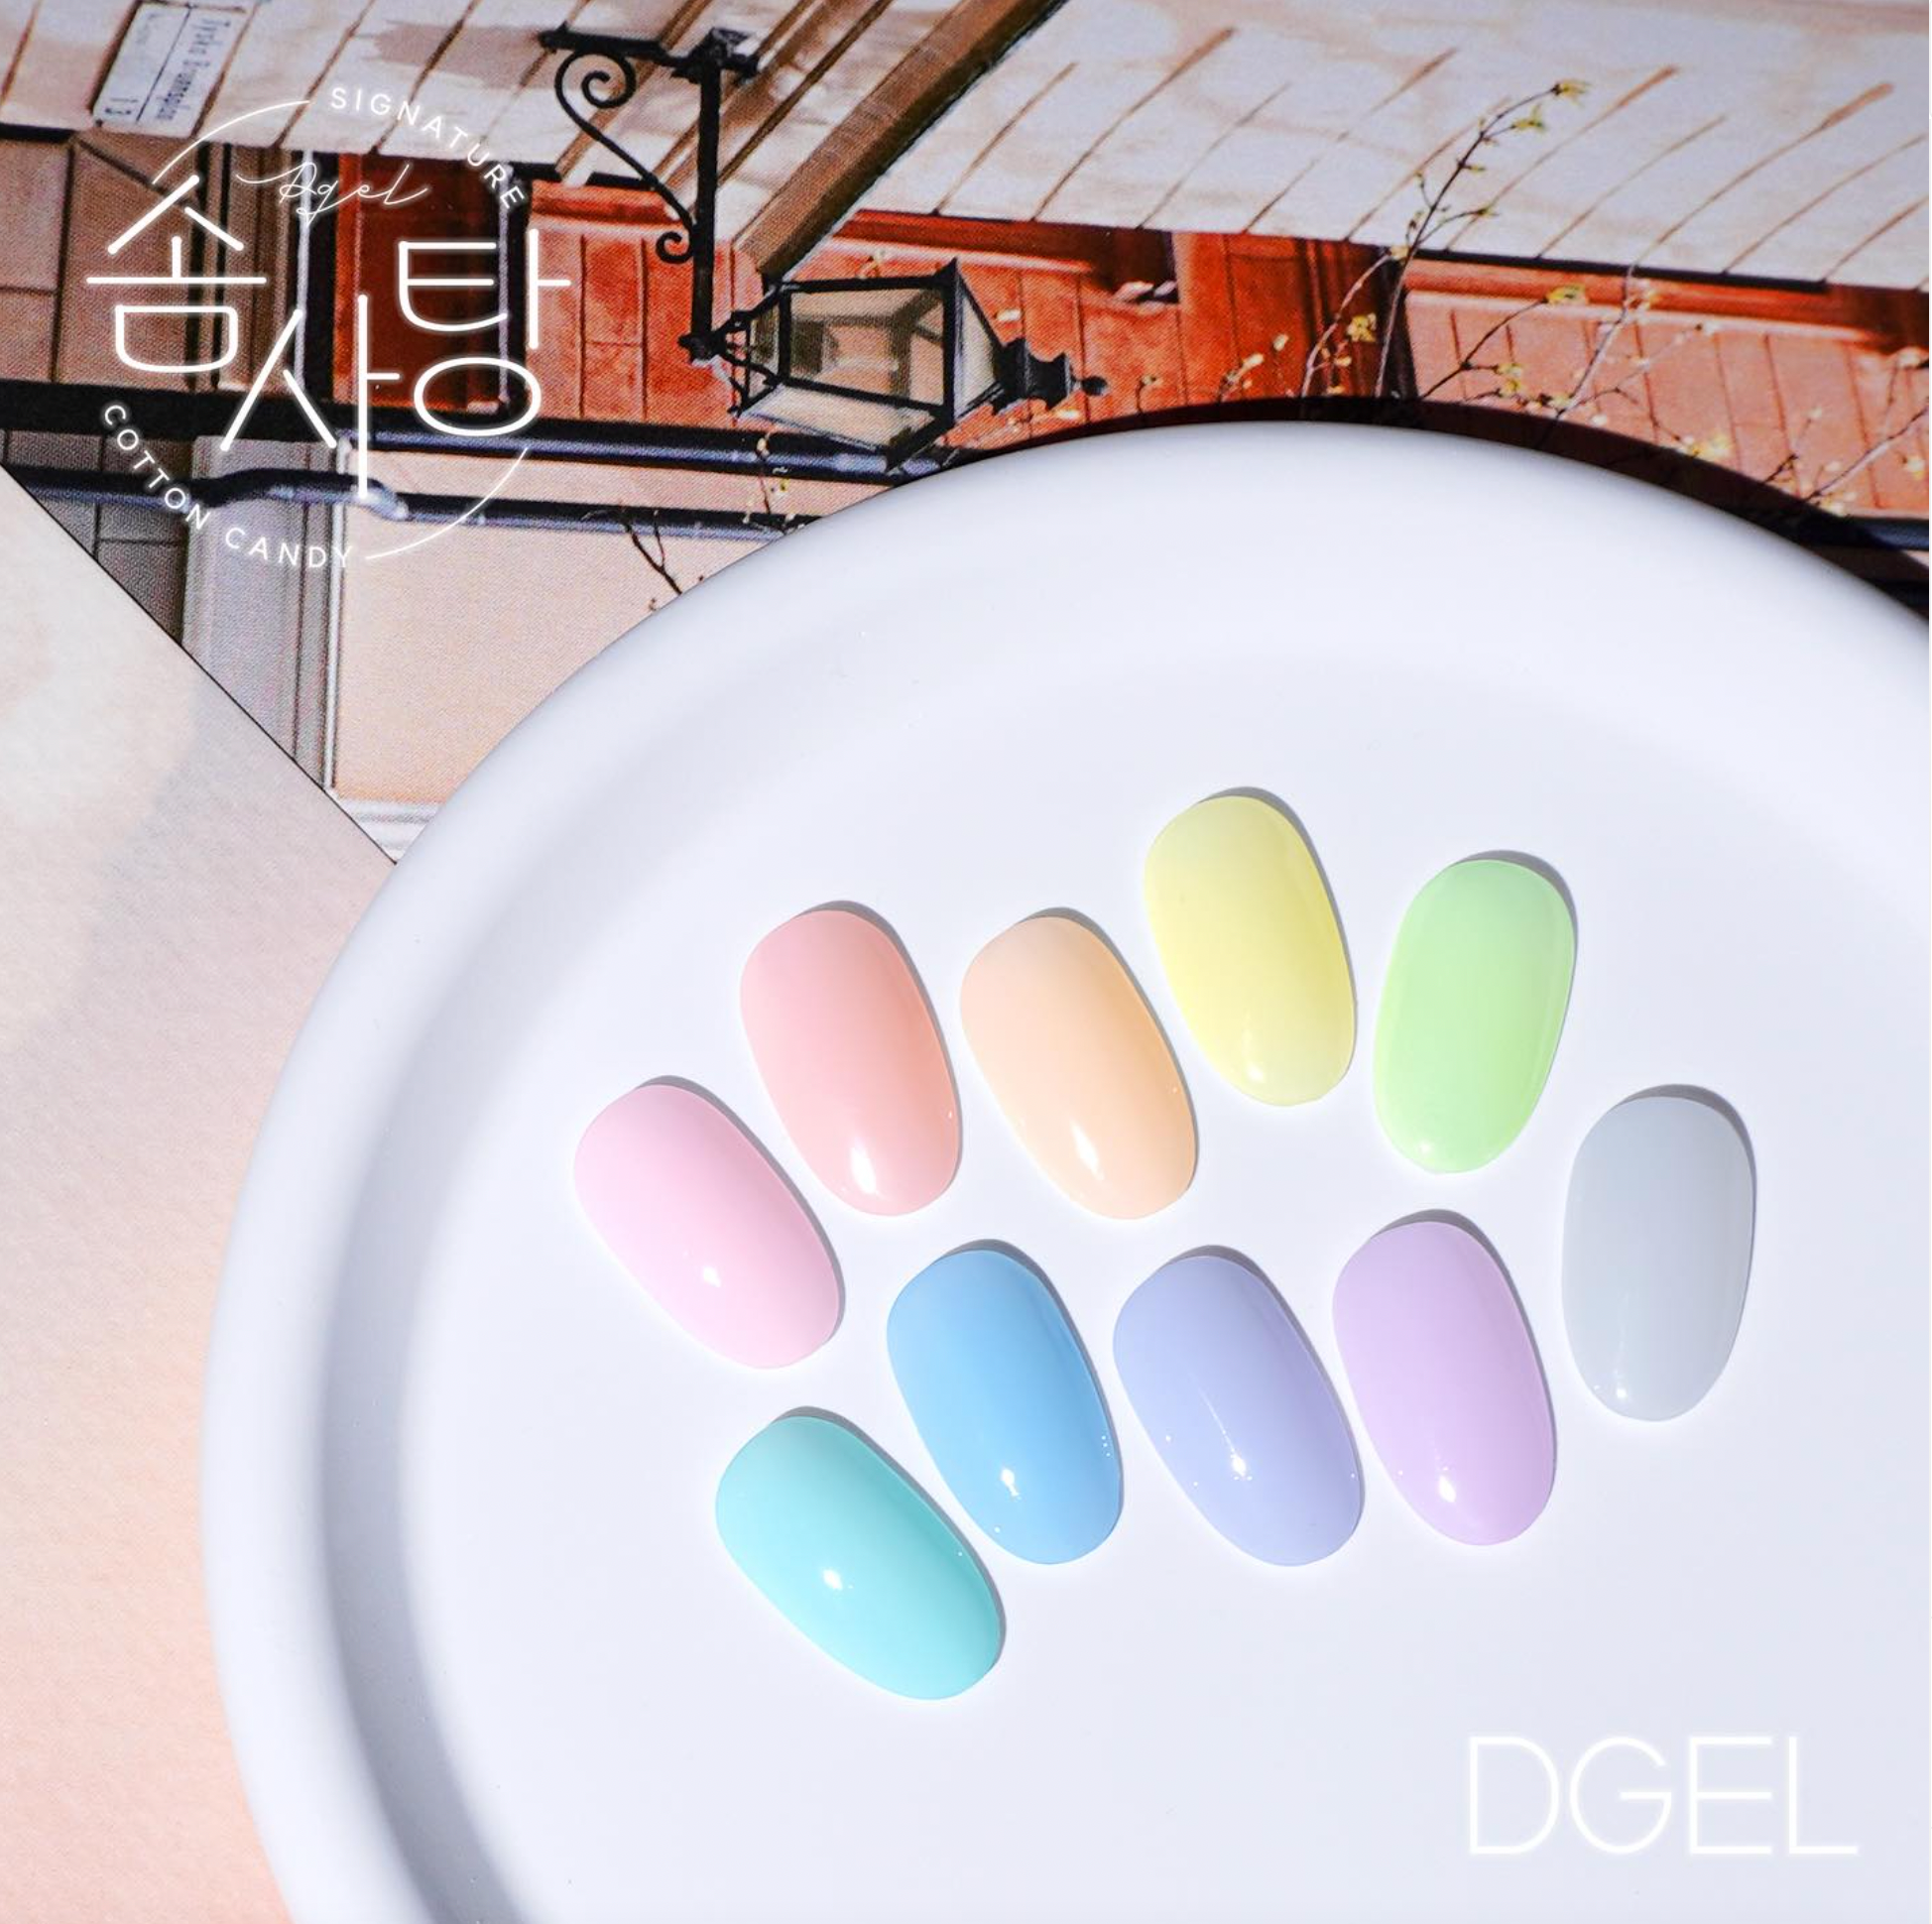 DGEL Signature - Cotton Candy 10pc collection